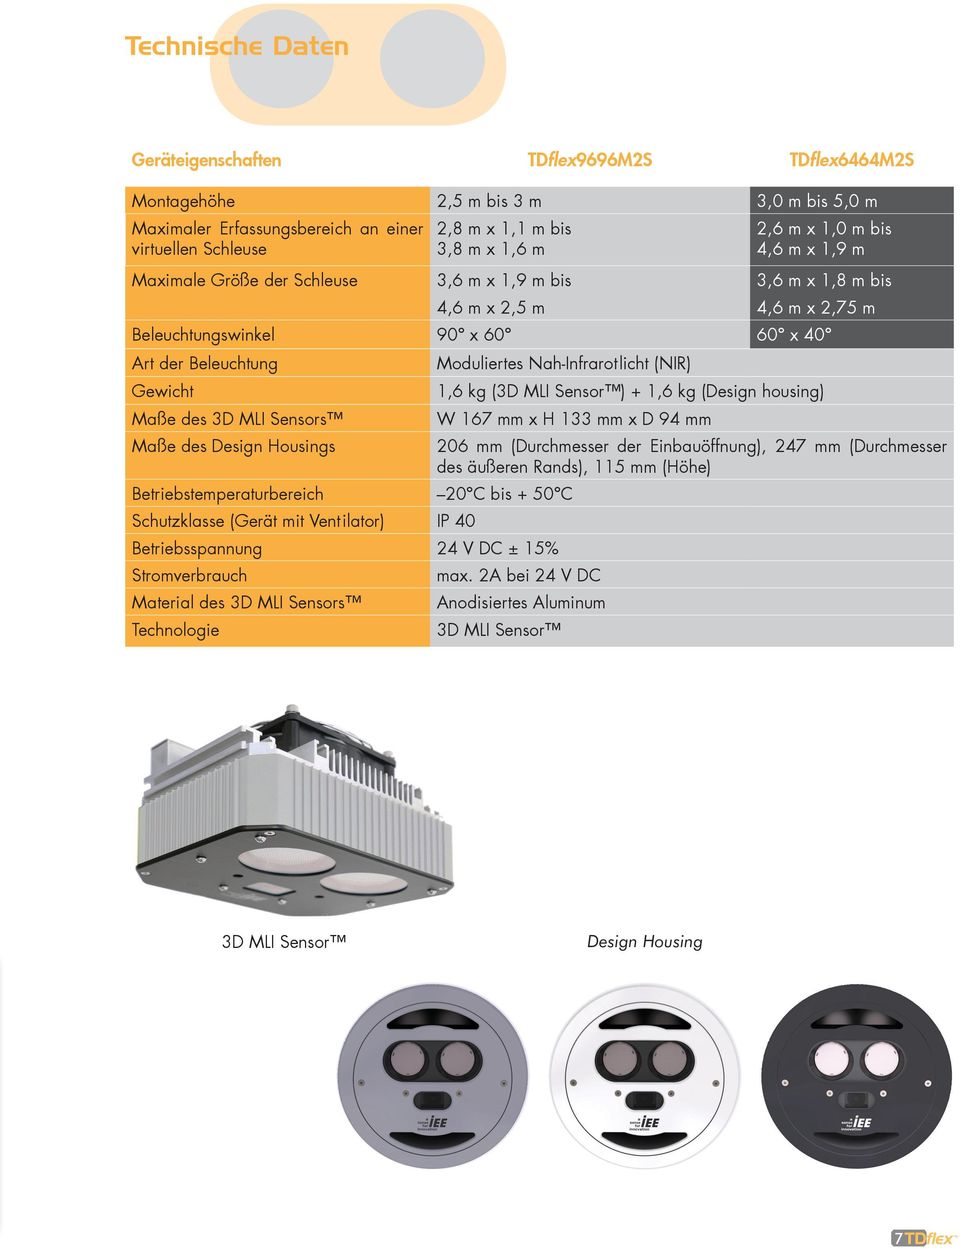 Nah-Infrarotlicht (NIR) Gewicht 1,6 kg (3D MLI Sensor ) + 1,6 kg (Design housing) Maße des 3D MLI Sensors W 167 mm x H 133 mm x D 94 mm Maße des Design Housings 206 mm (Durchmesser der